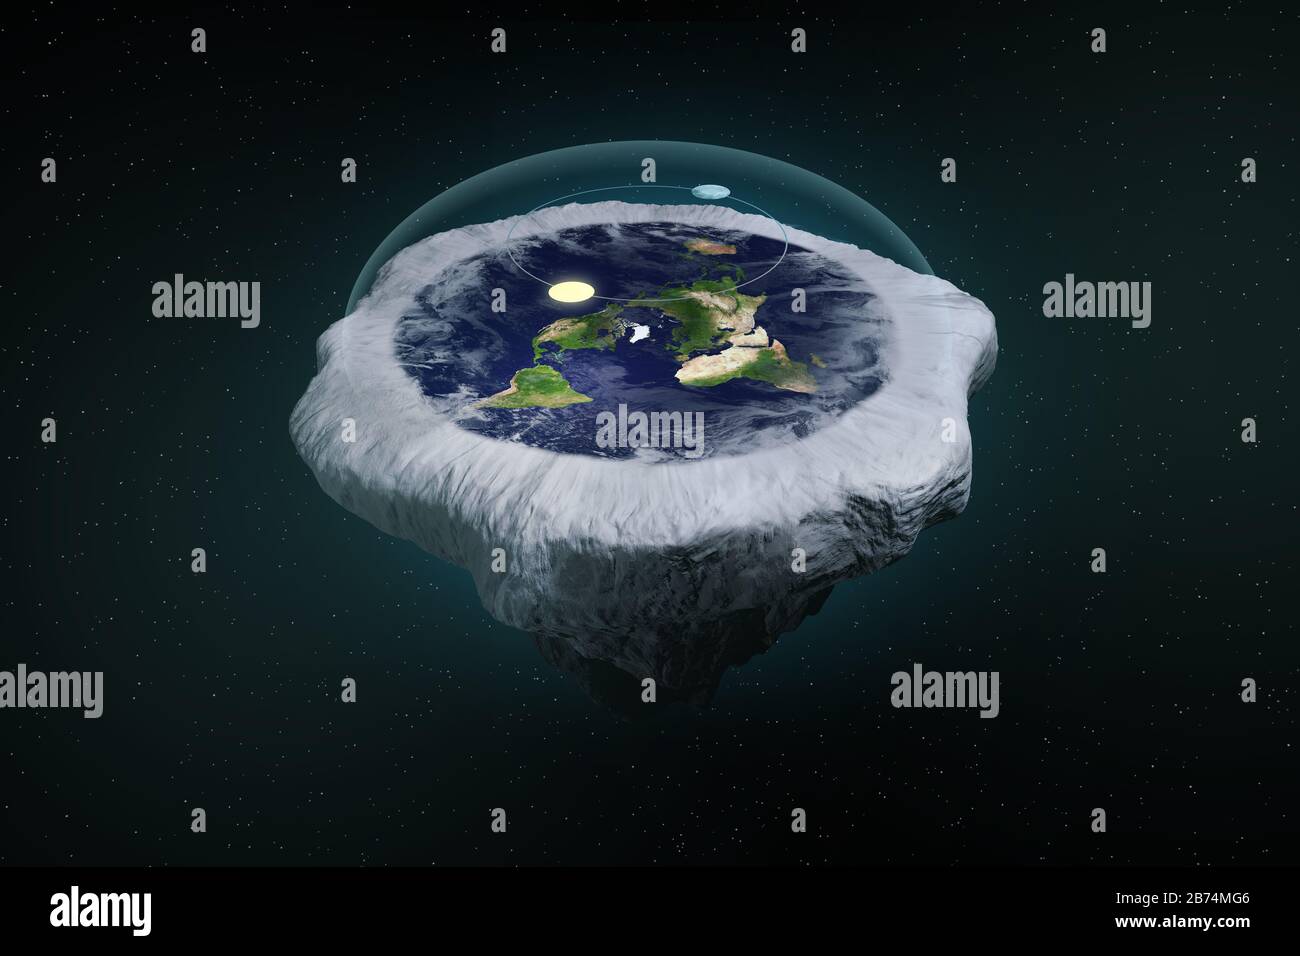 Teoría de la tierra plana fotografías e imágenes de alta resolución - Alamy